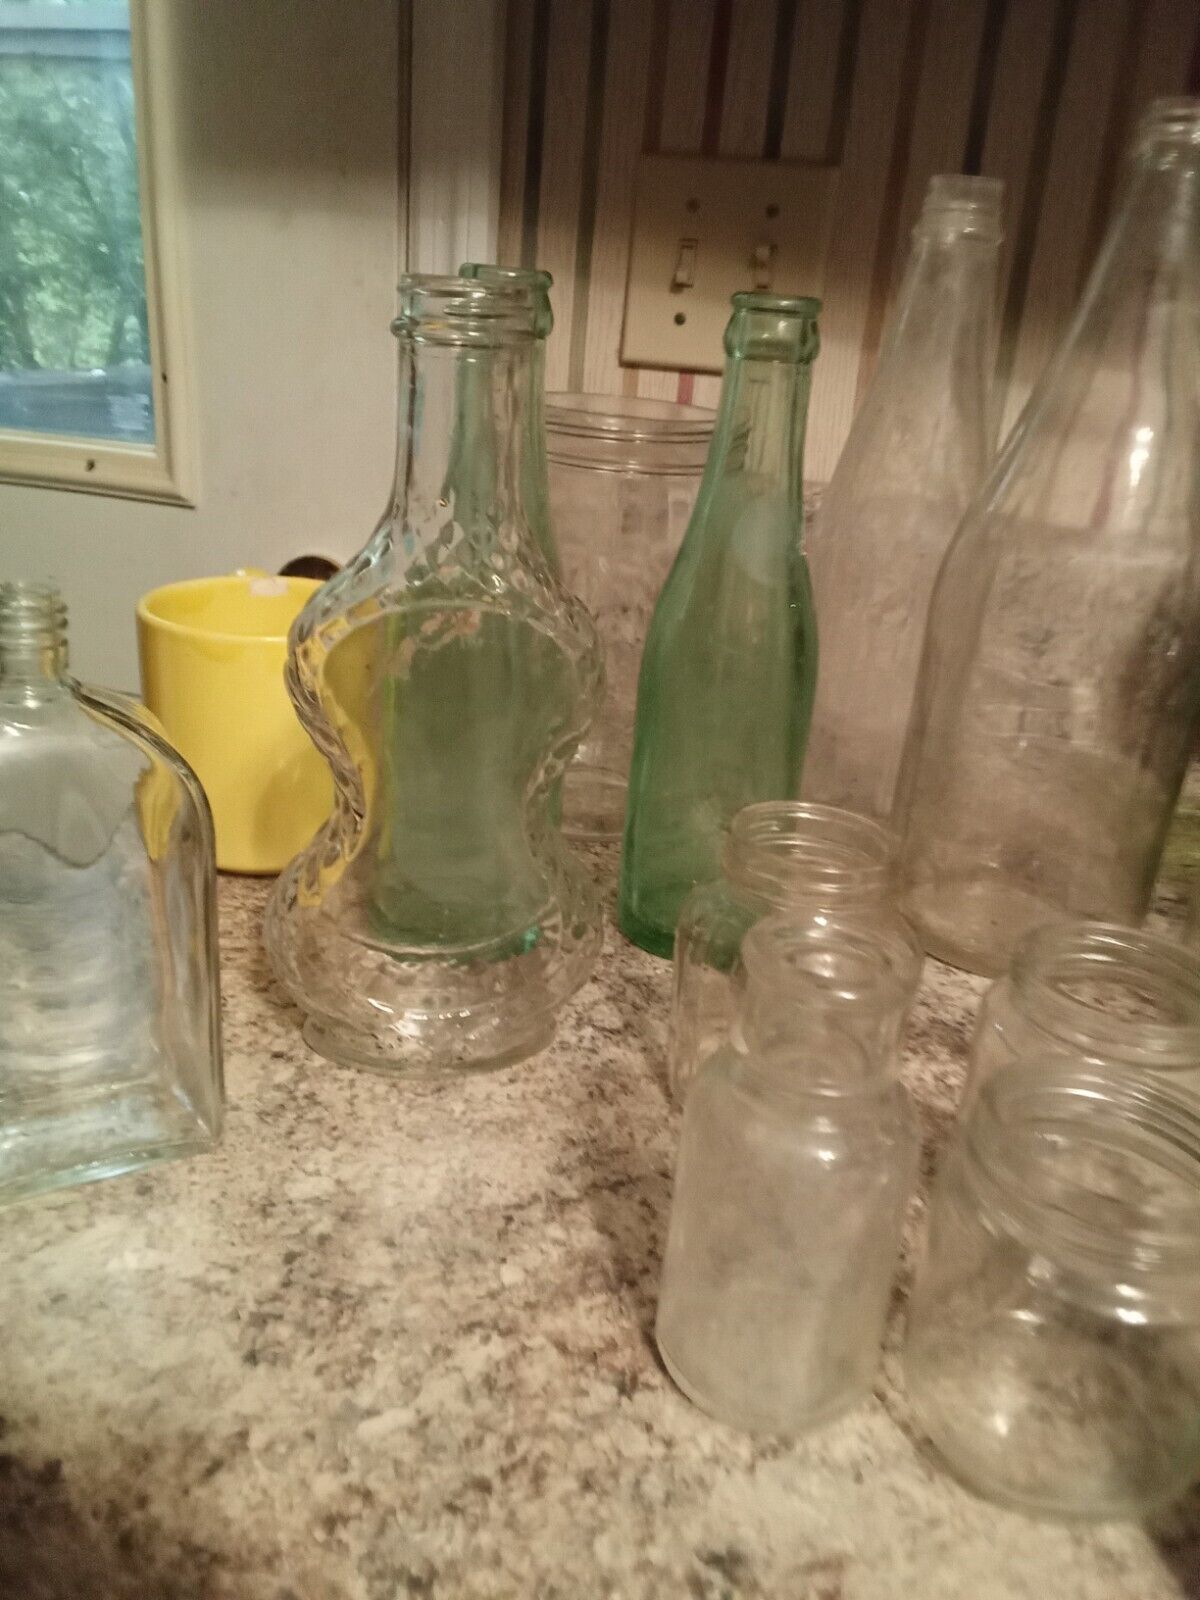 Assorted Vintage Glass Bottles